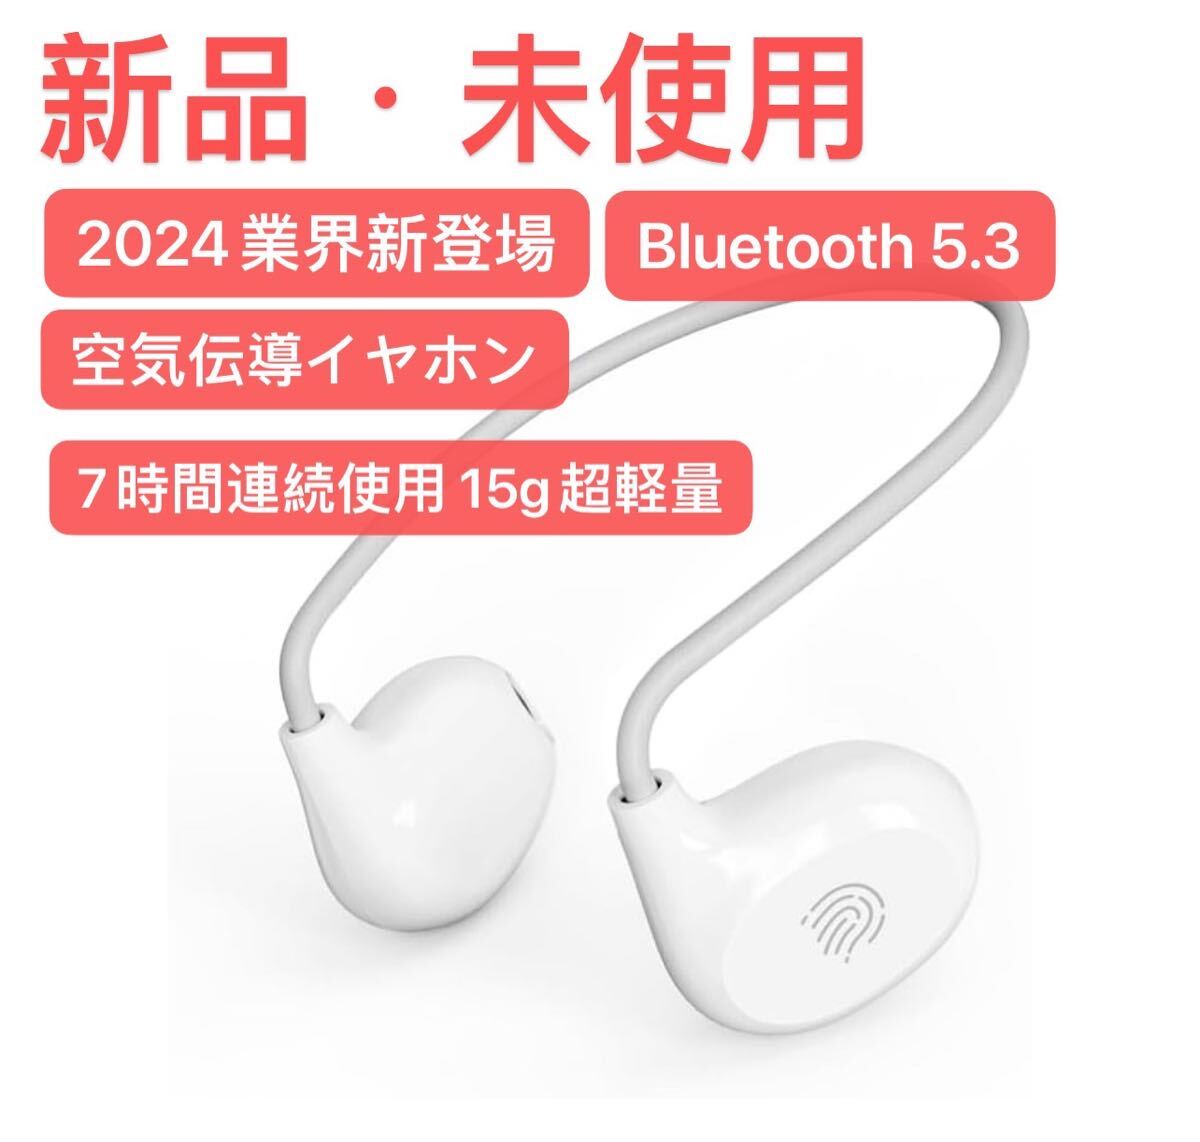 2024業界新登場 空気伝導イヤホン Bluetooth 5.3 ワイヤレスの画像1